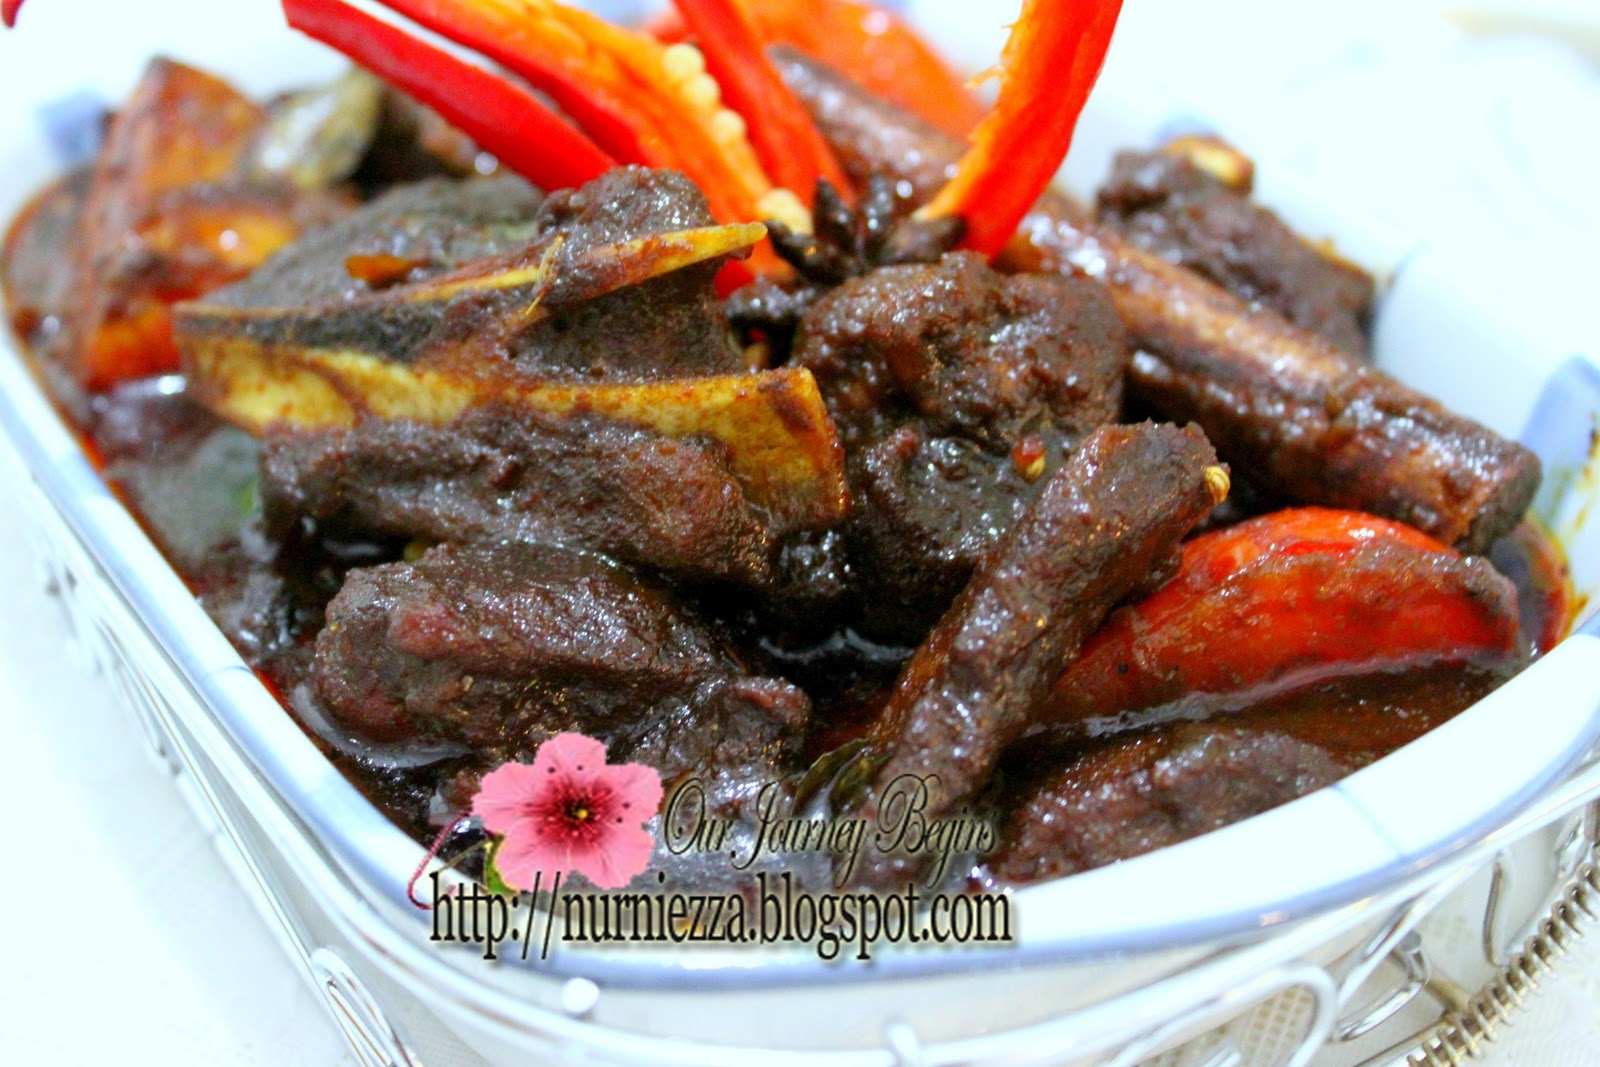 Our Journey Begins: Mutton Masak Hitam Nasi Kandar Penang